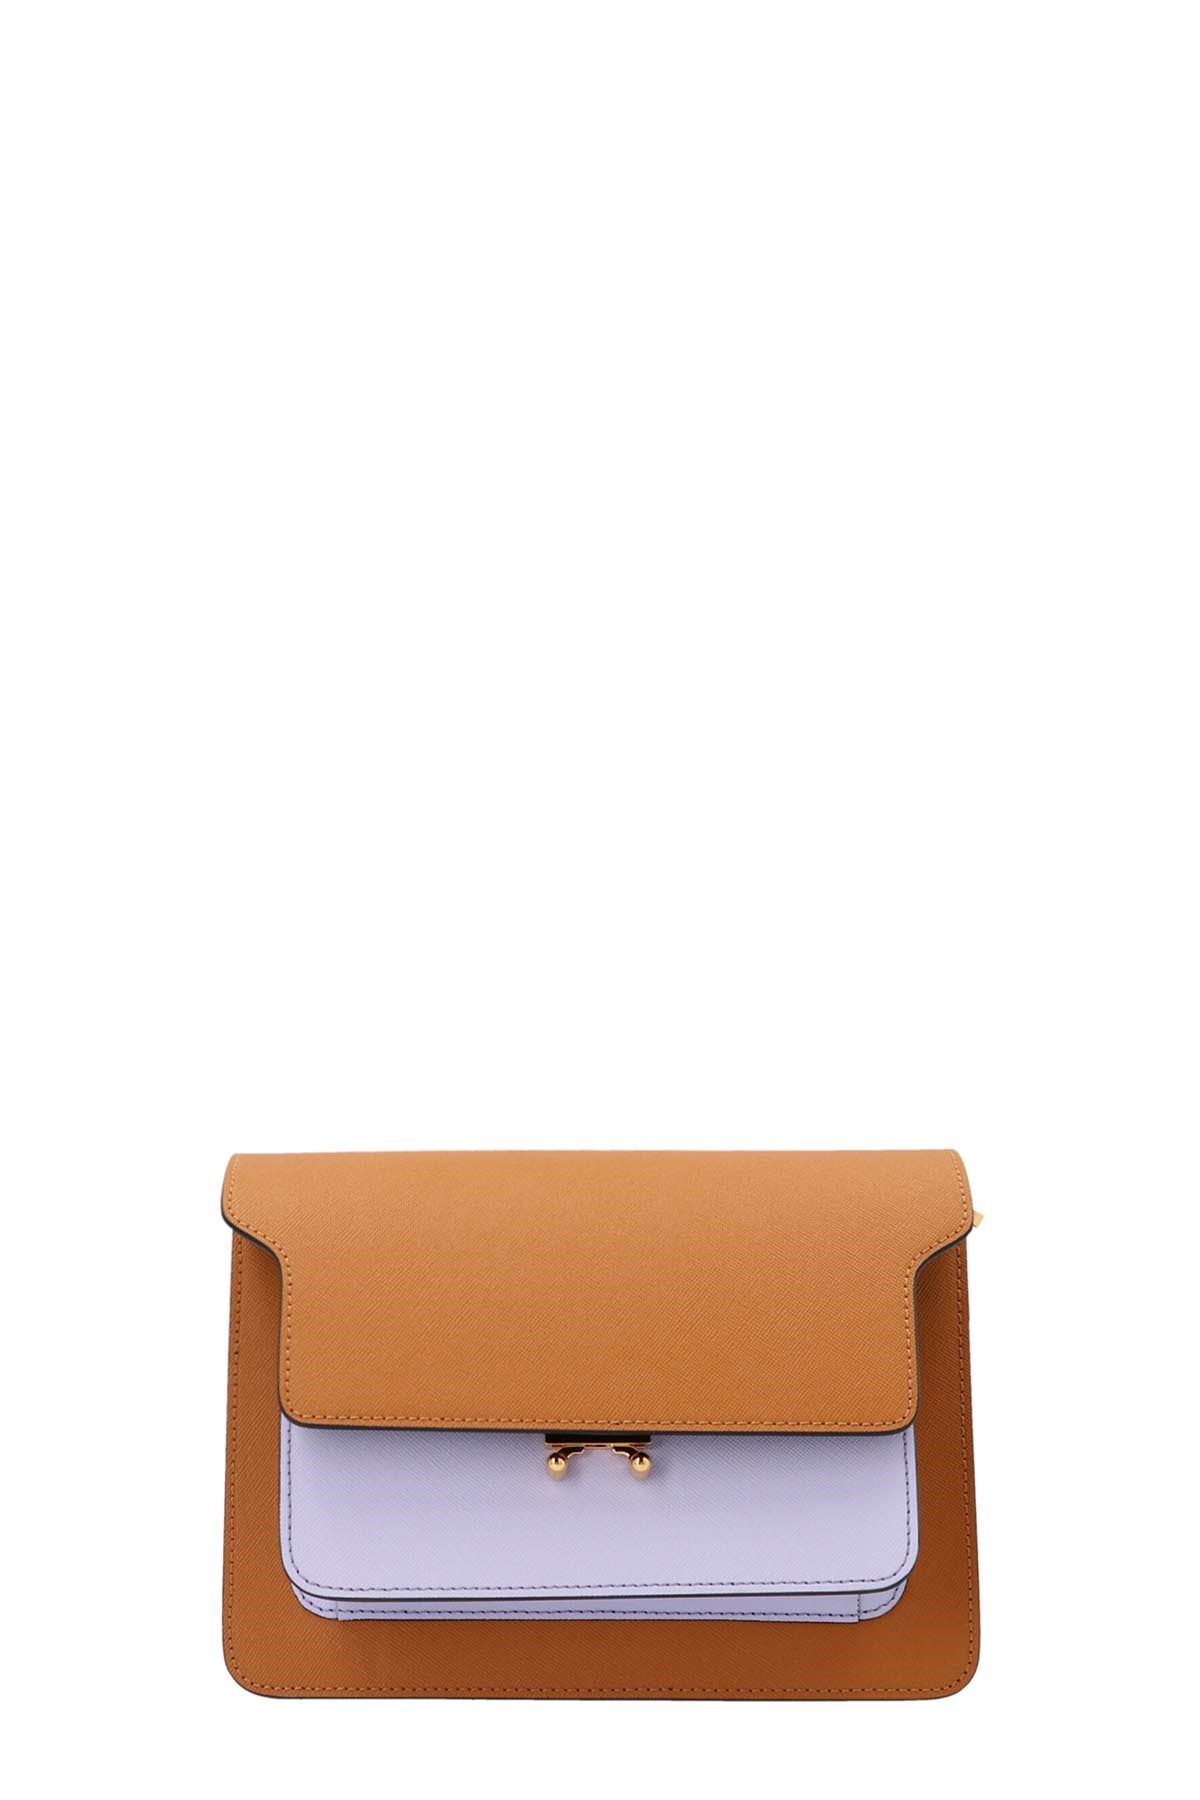 MARNI 'Trunk’ Midi Shoulder Bag